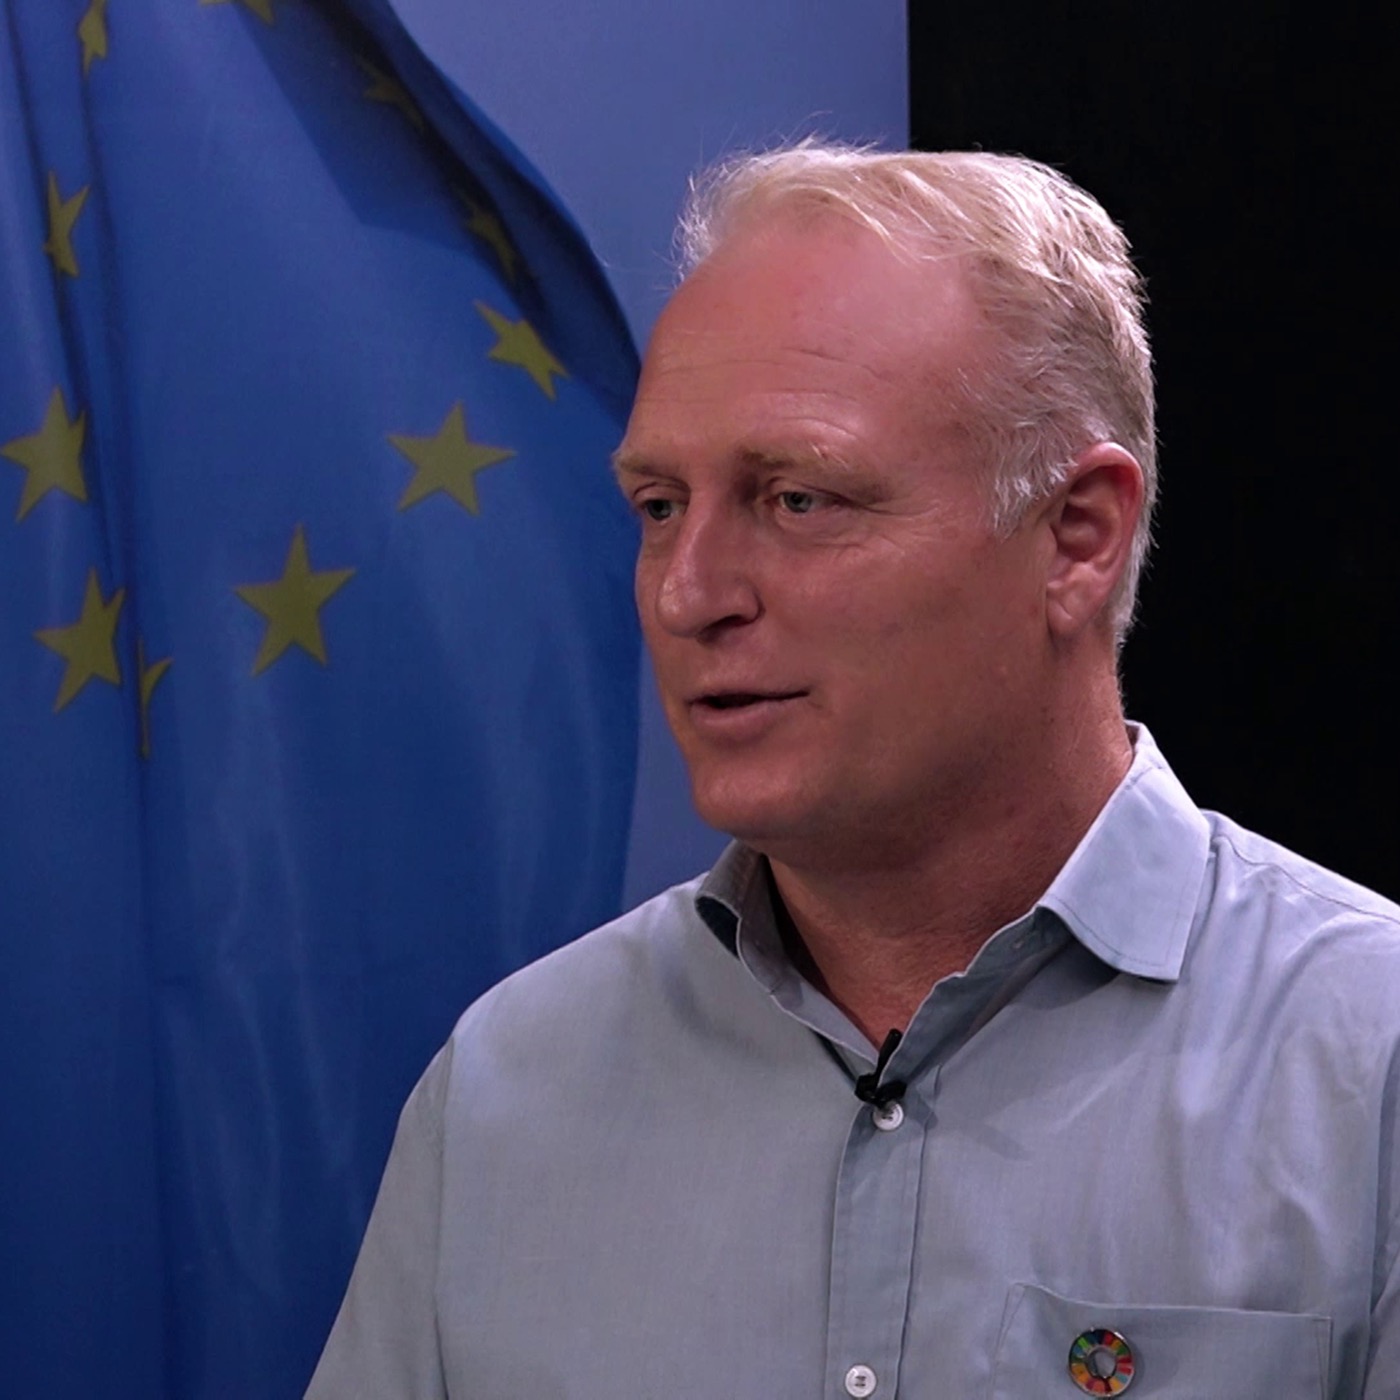 EU Parlamentsvalg 2019 - Morten Klessen (Socialdemokratiet)